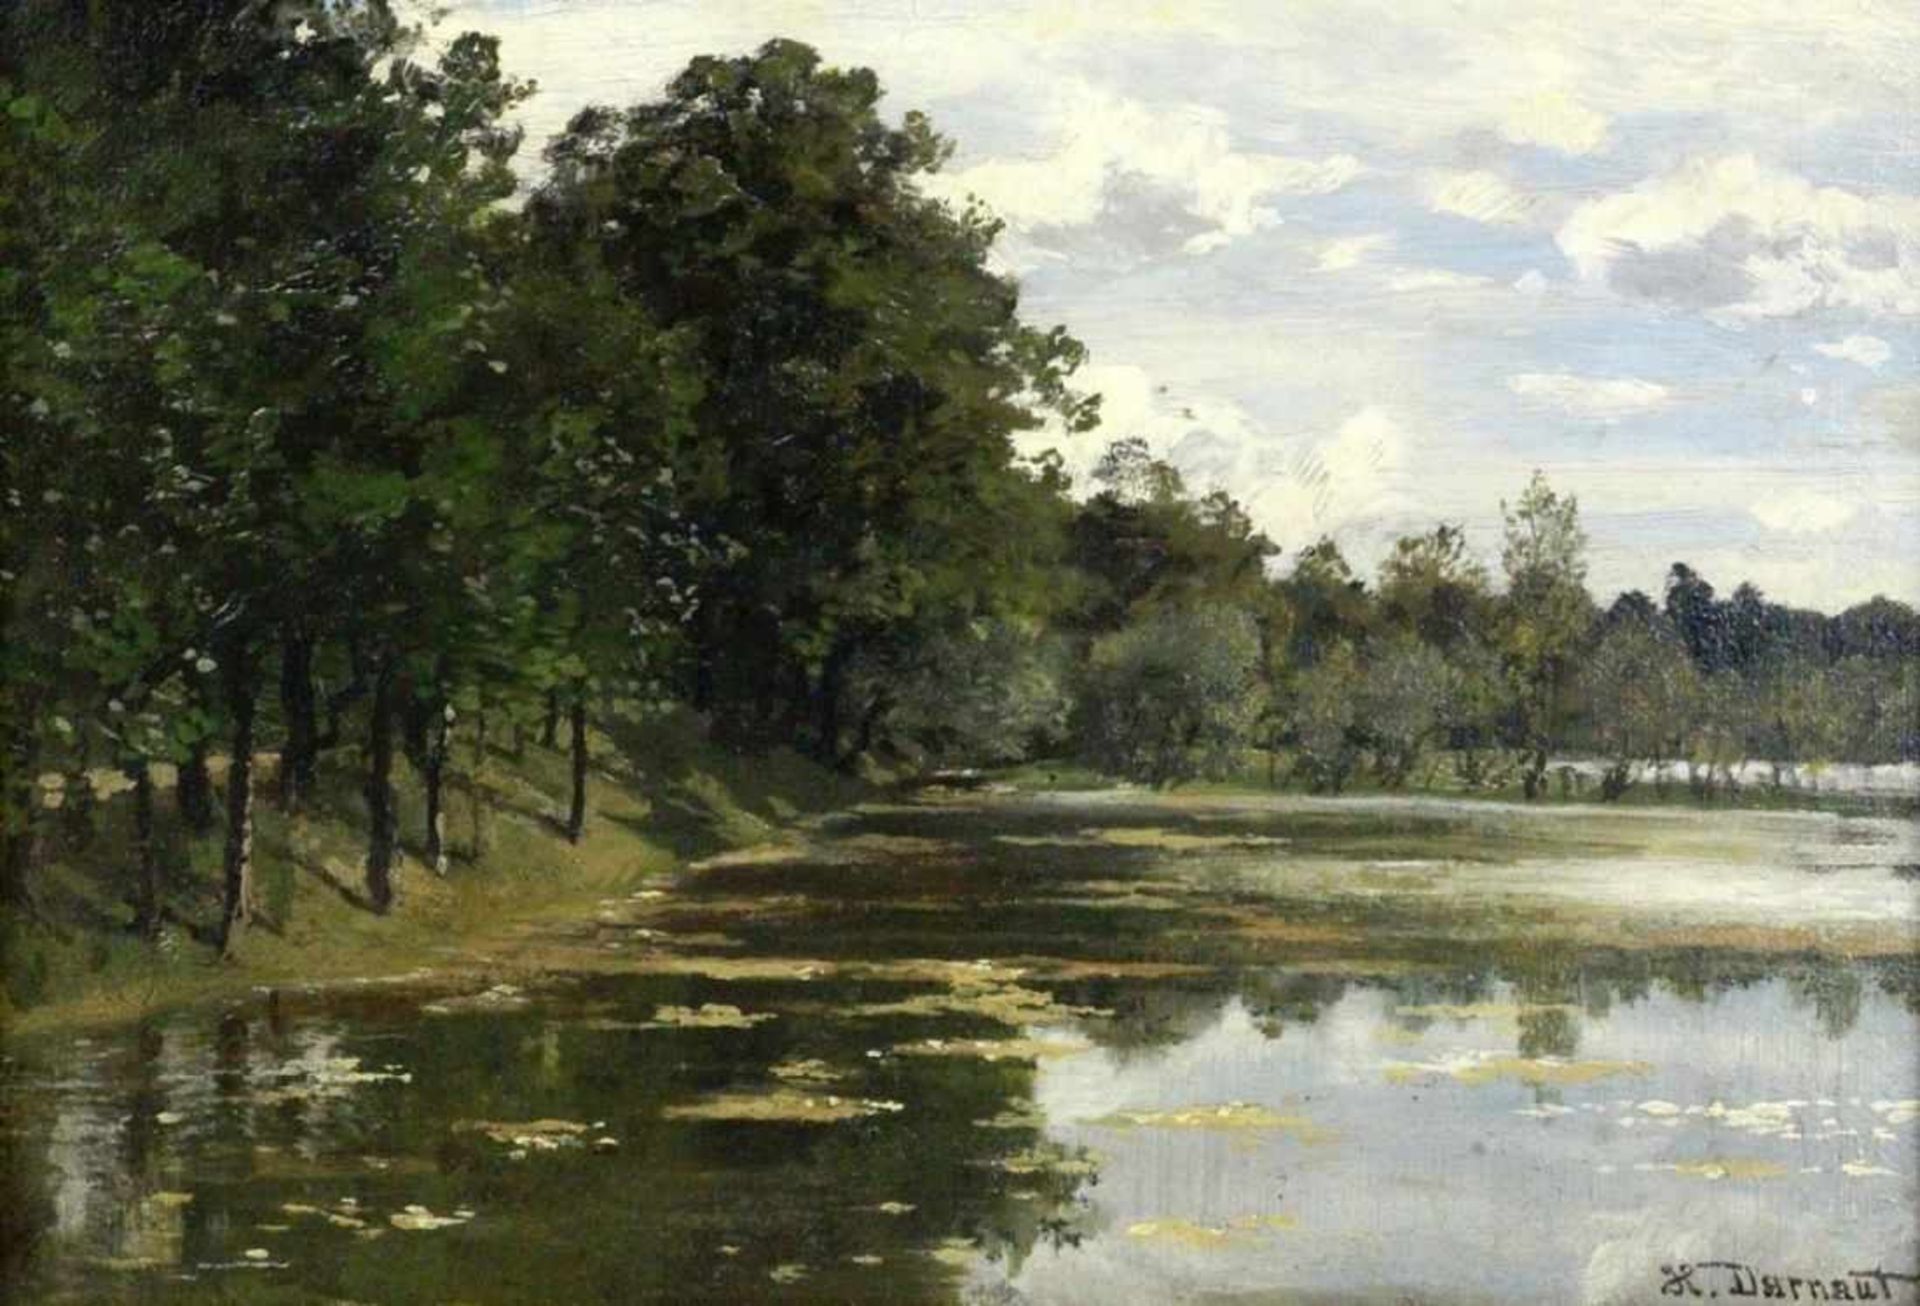 DARNAUT, HUGODessau 1851 - 1937 Wien Parklandschaft mit See. Öl/Holz, signiert. 18x24cm, Ra. - Bild 2 aus 3